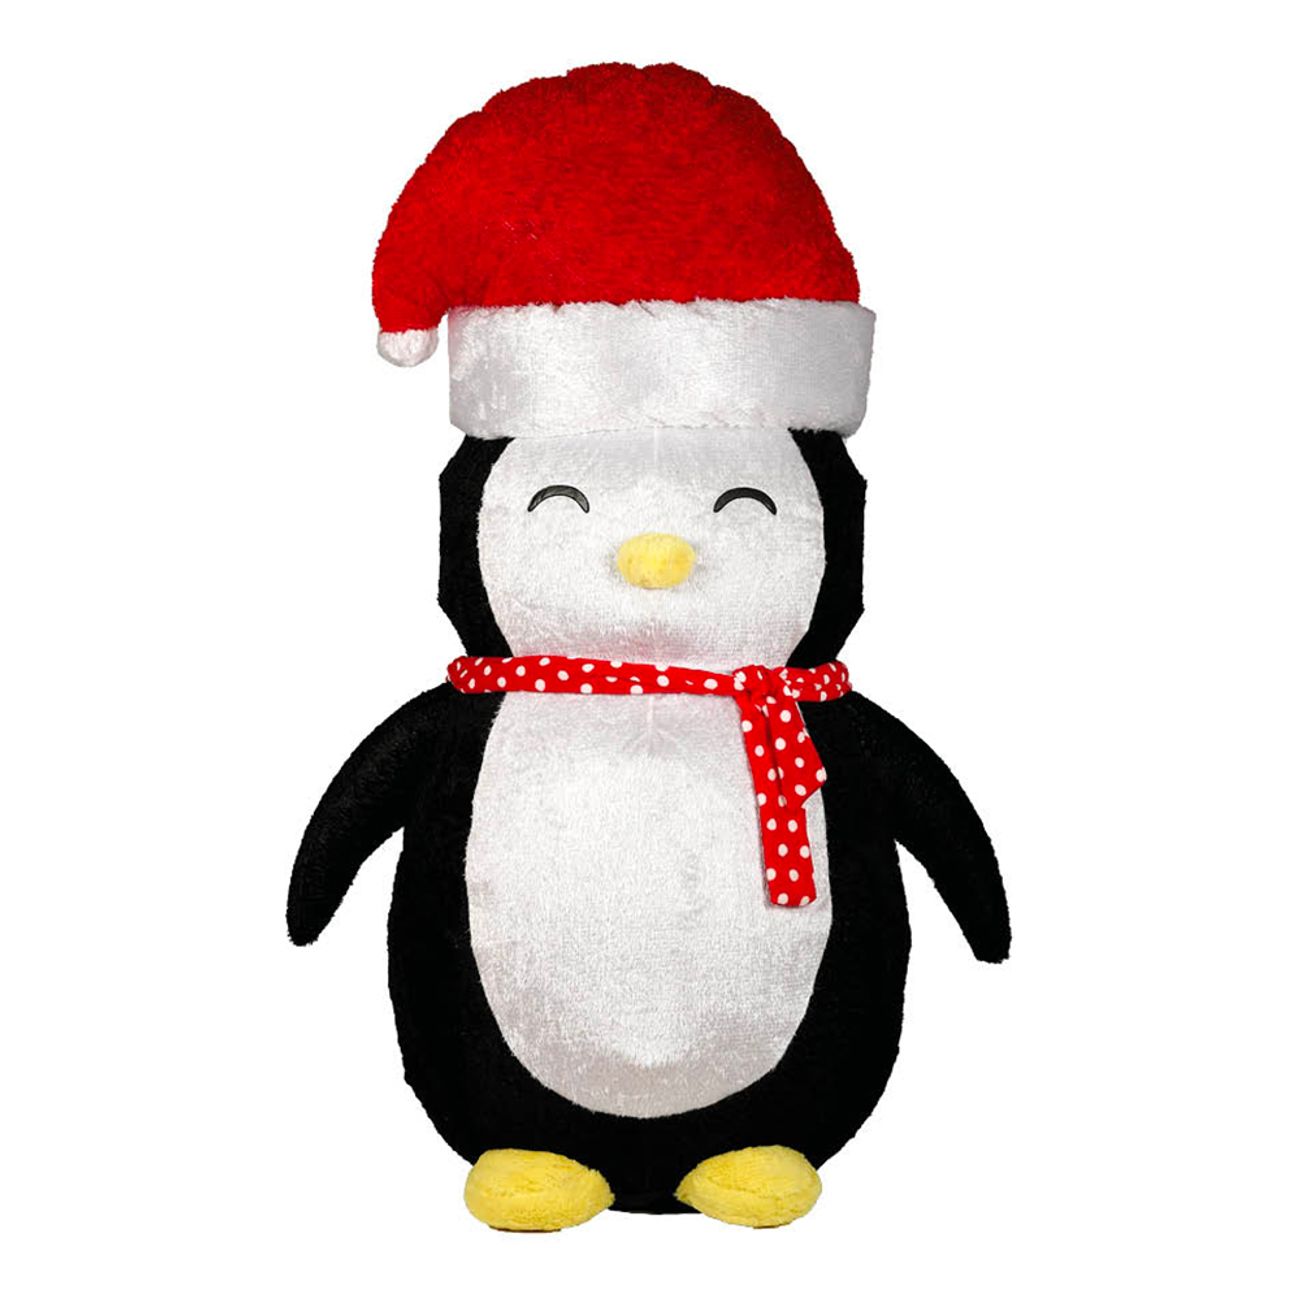 uppblasbar-pingvin-med-tomteluva-79241-1